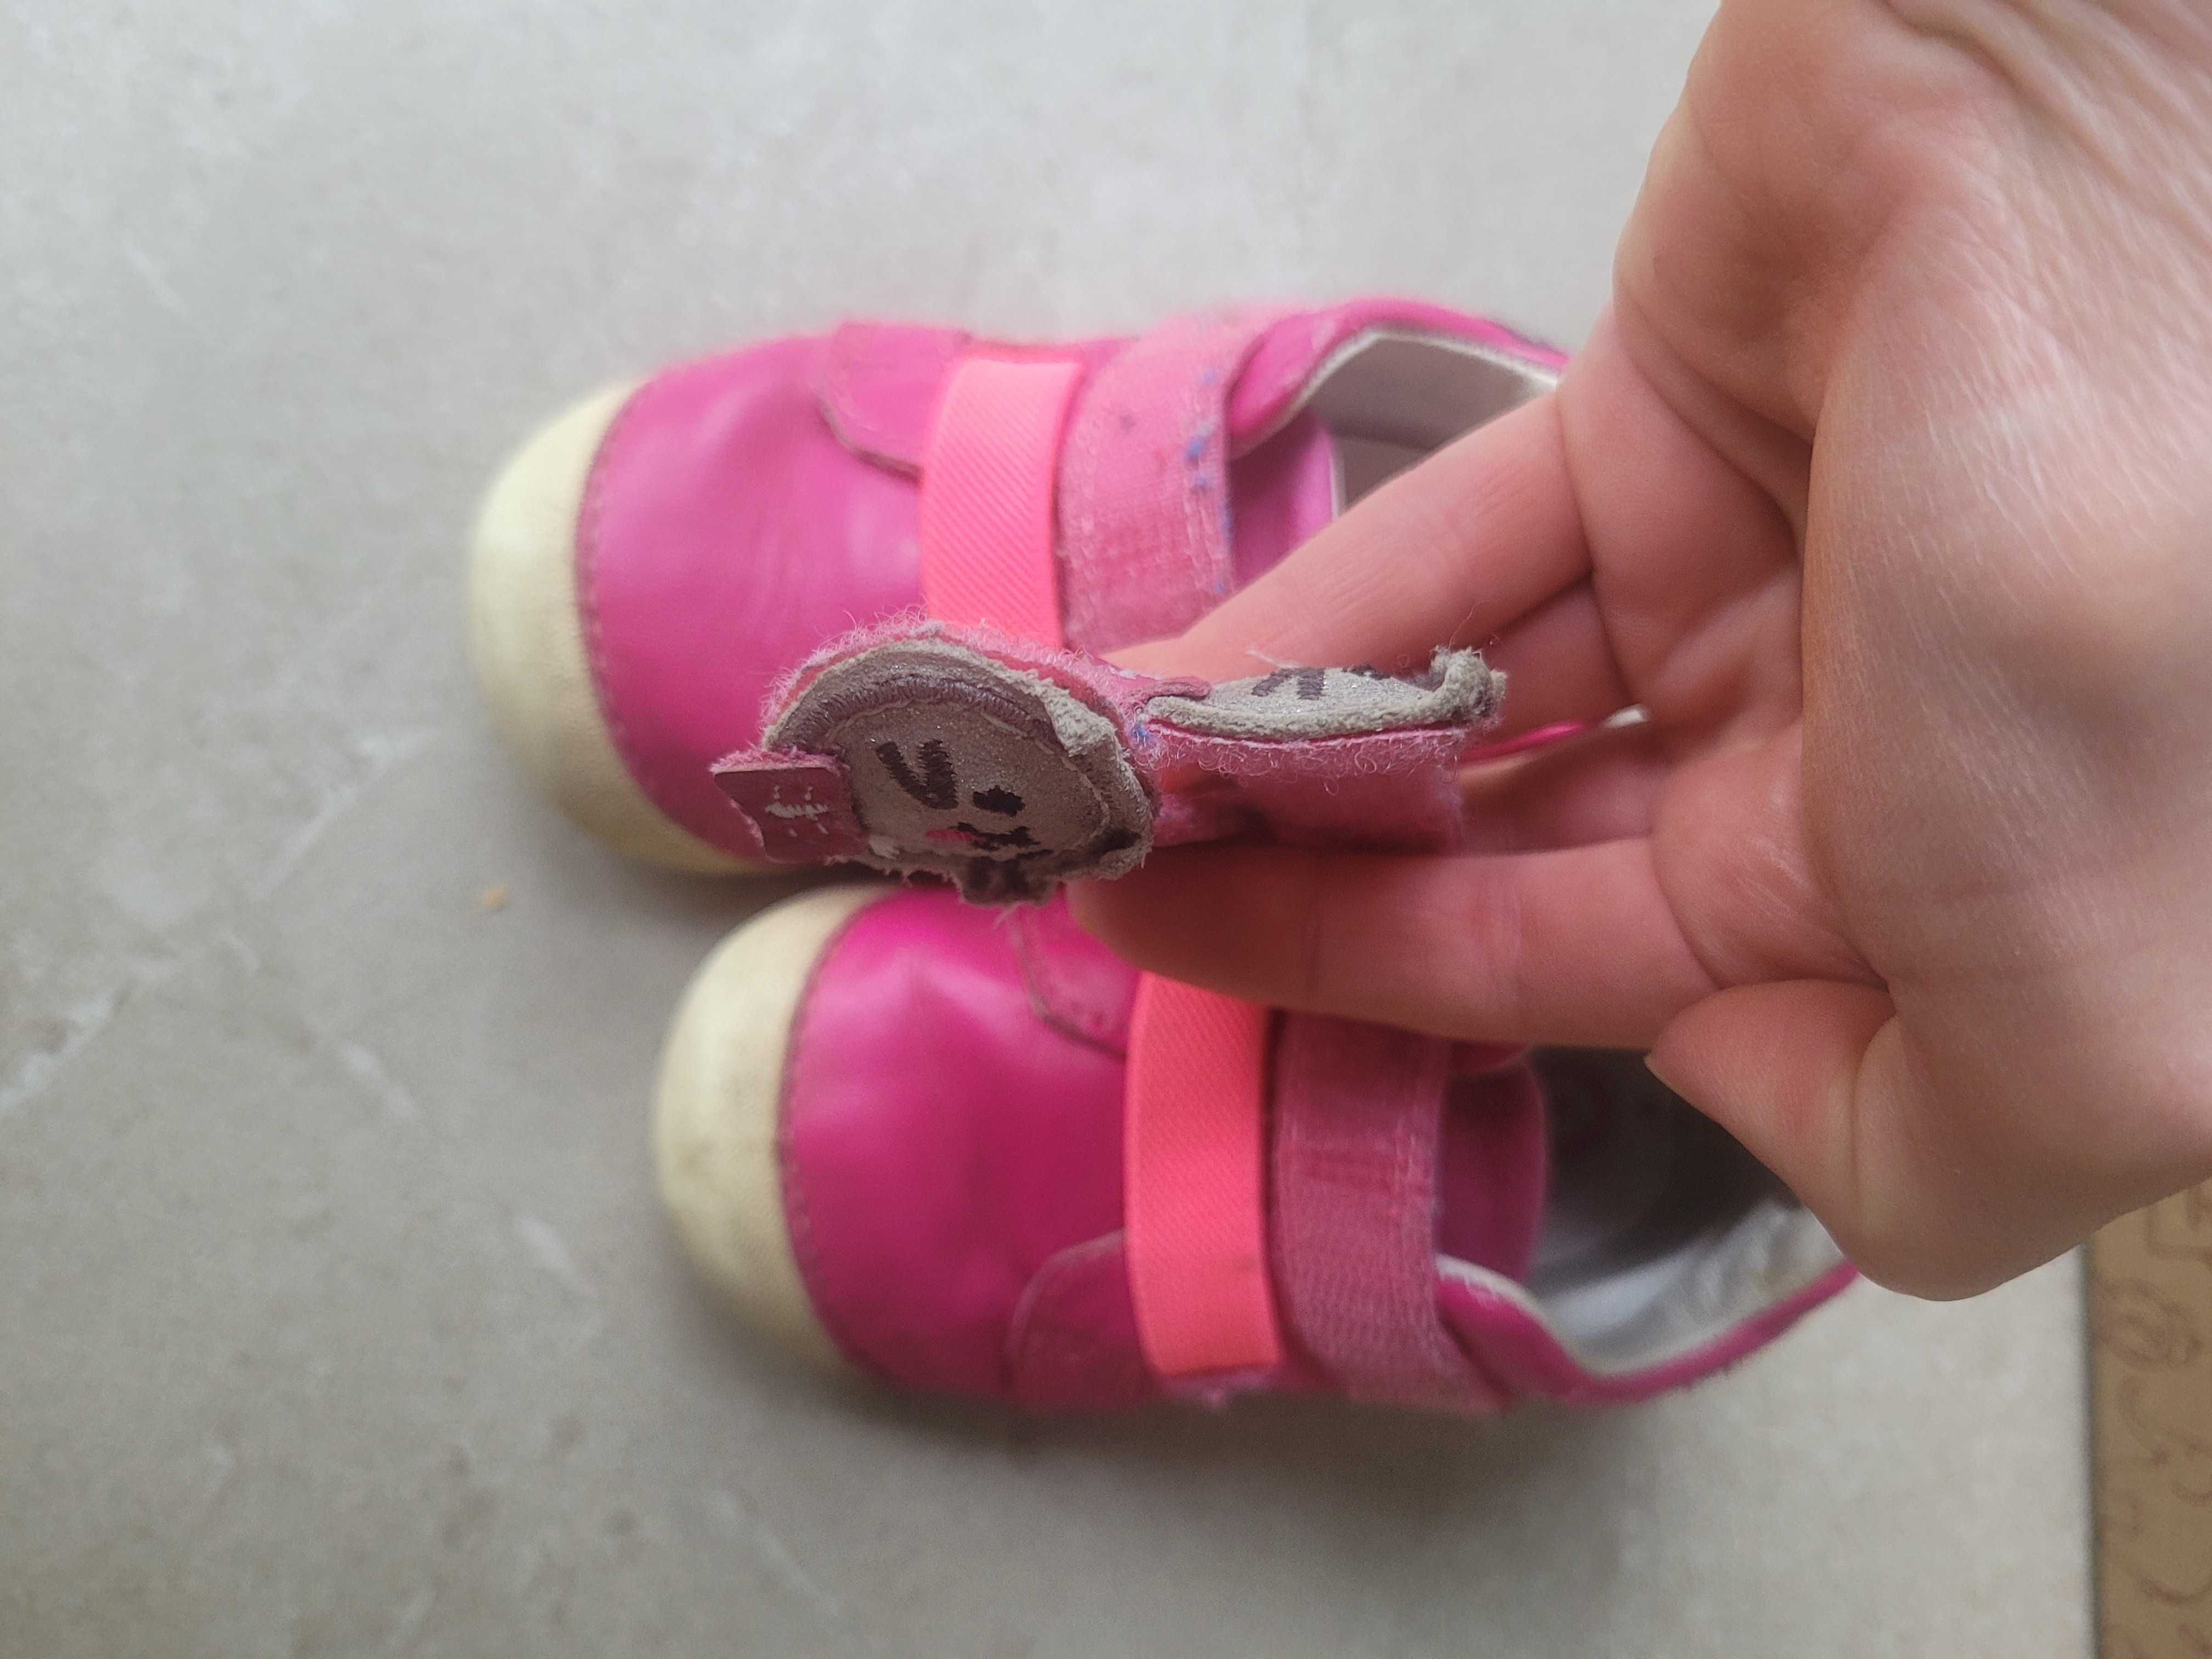 Дитячі кросівки для дівчинки